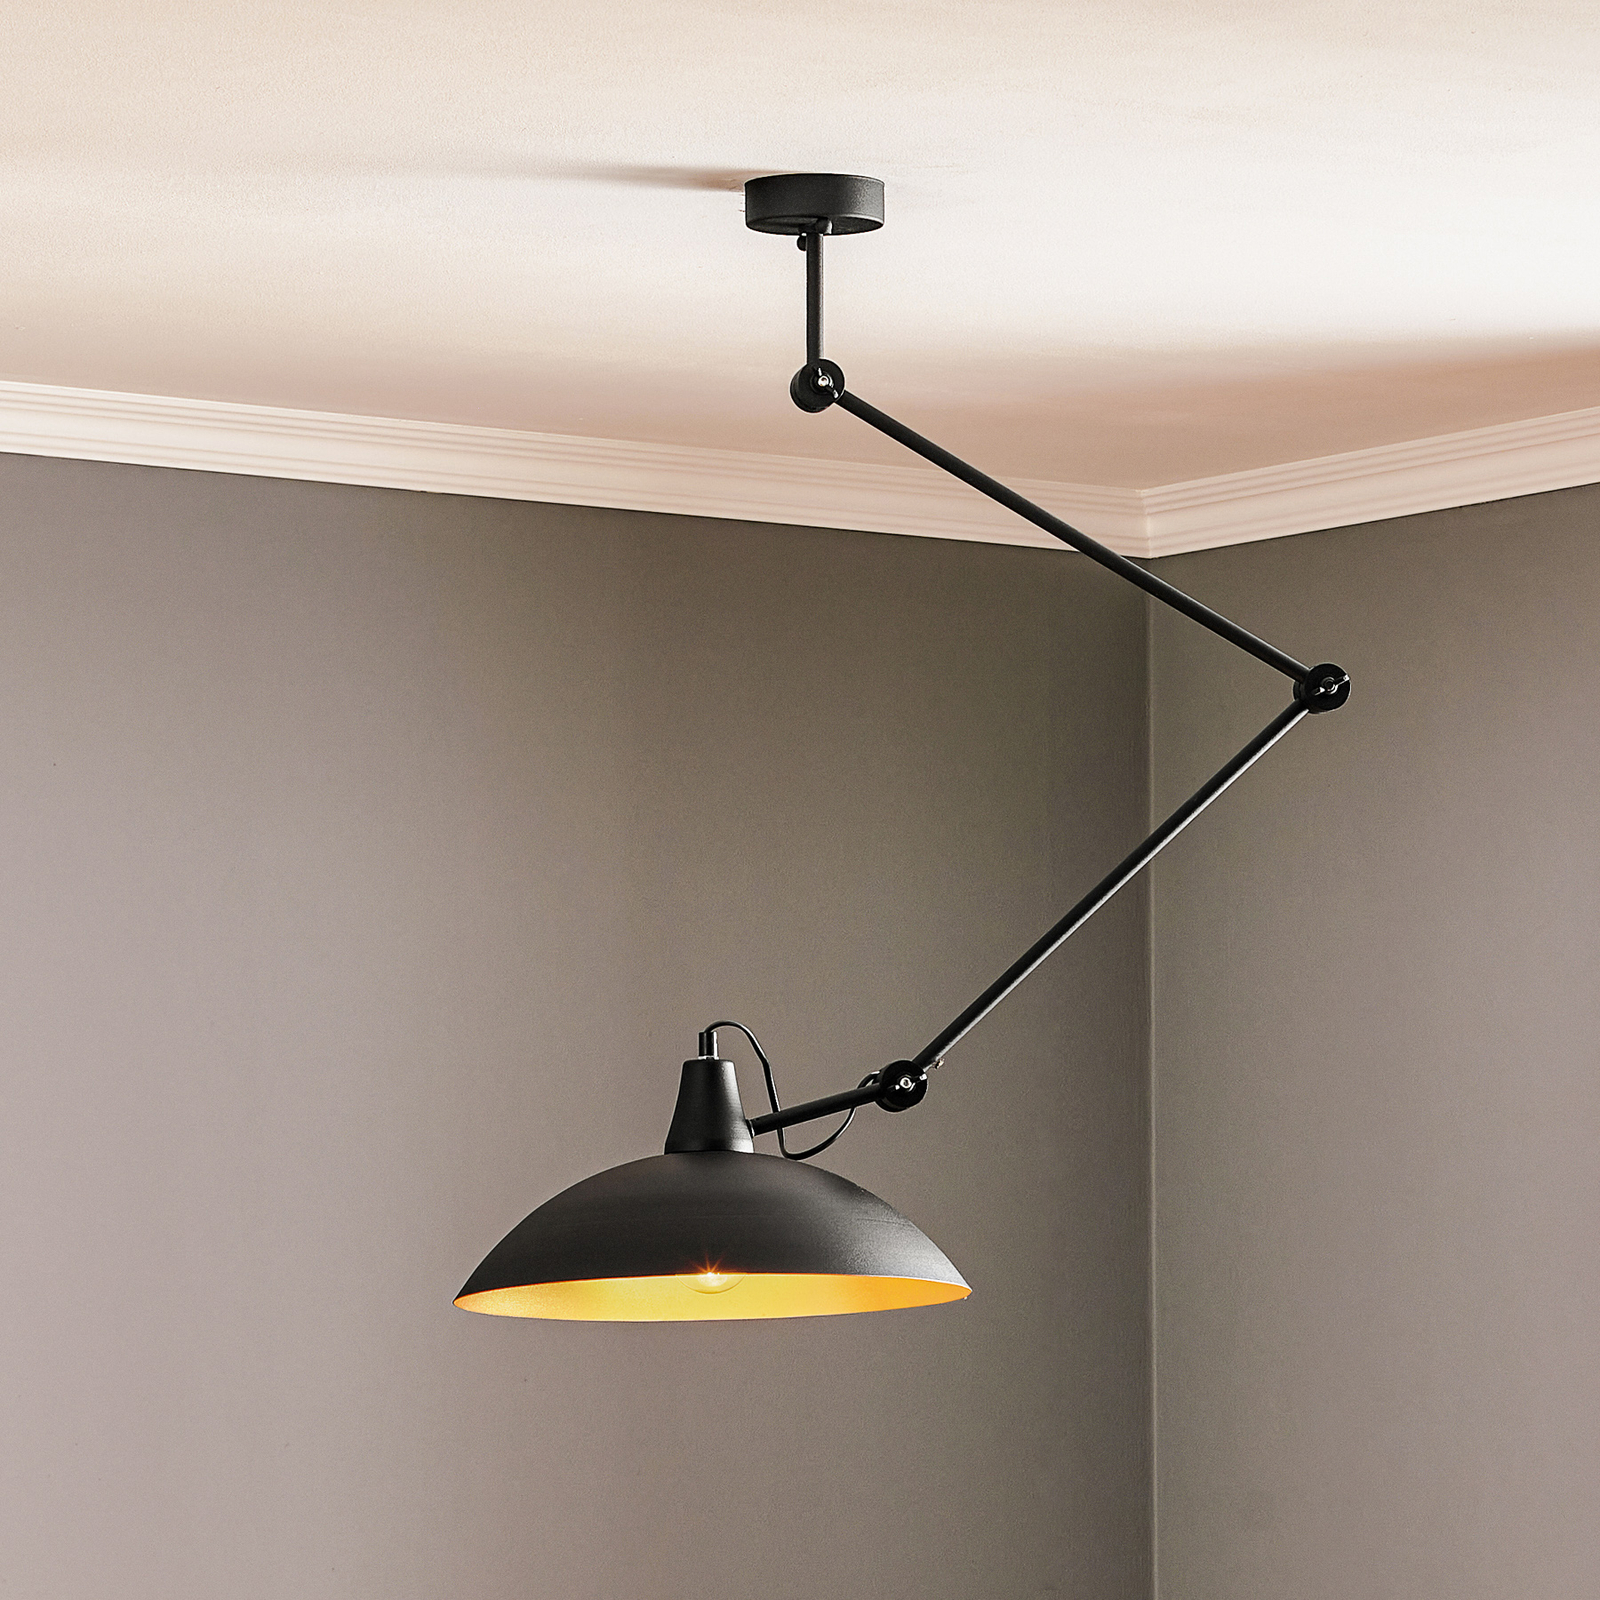 baseren Inspecteur Kraan Plafondlamp 808 verstelbaar 1-lamp zwart/goud | Lampen24.nl